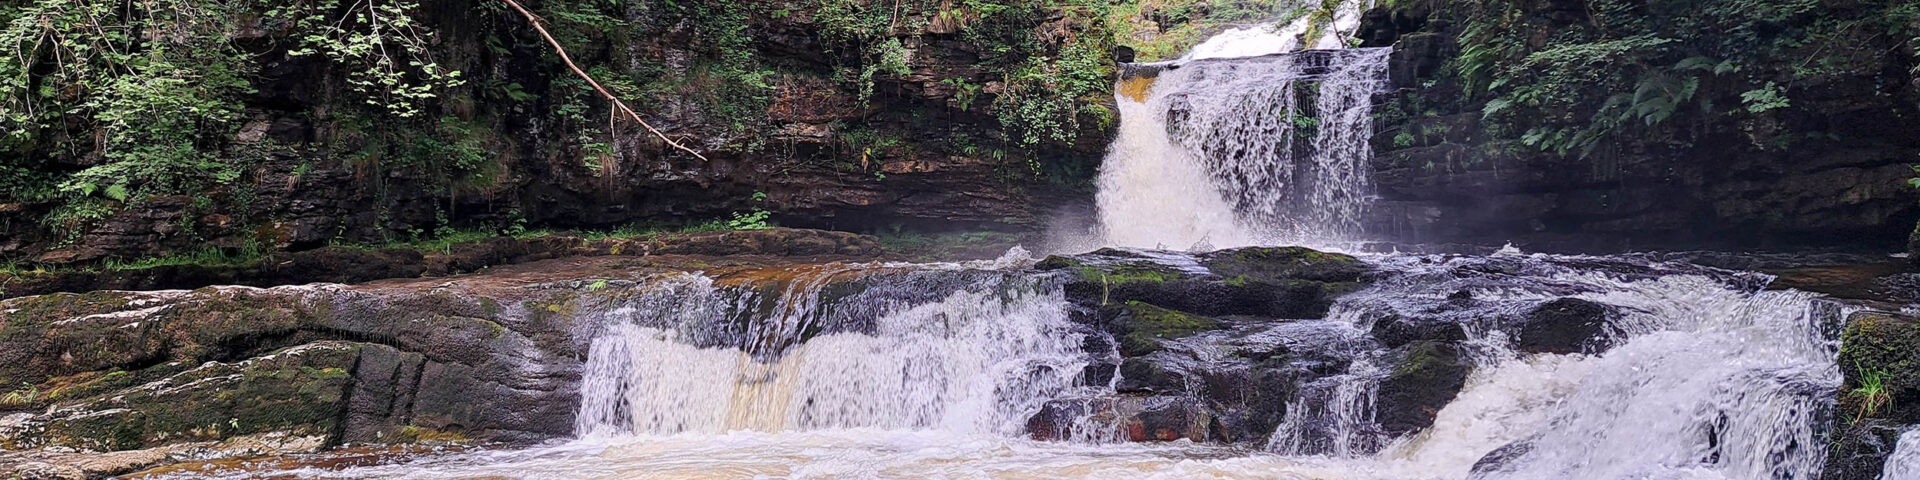 4 Waterfalls Walk Wandelen in Wales